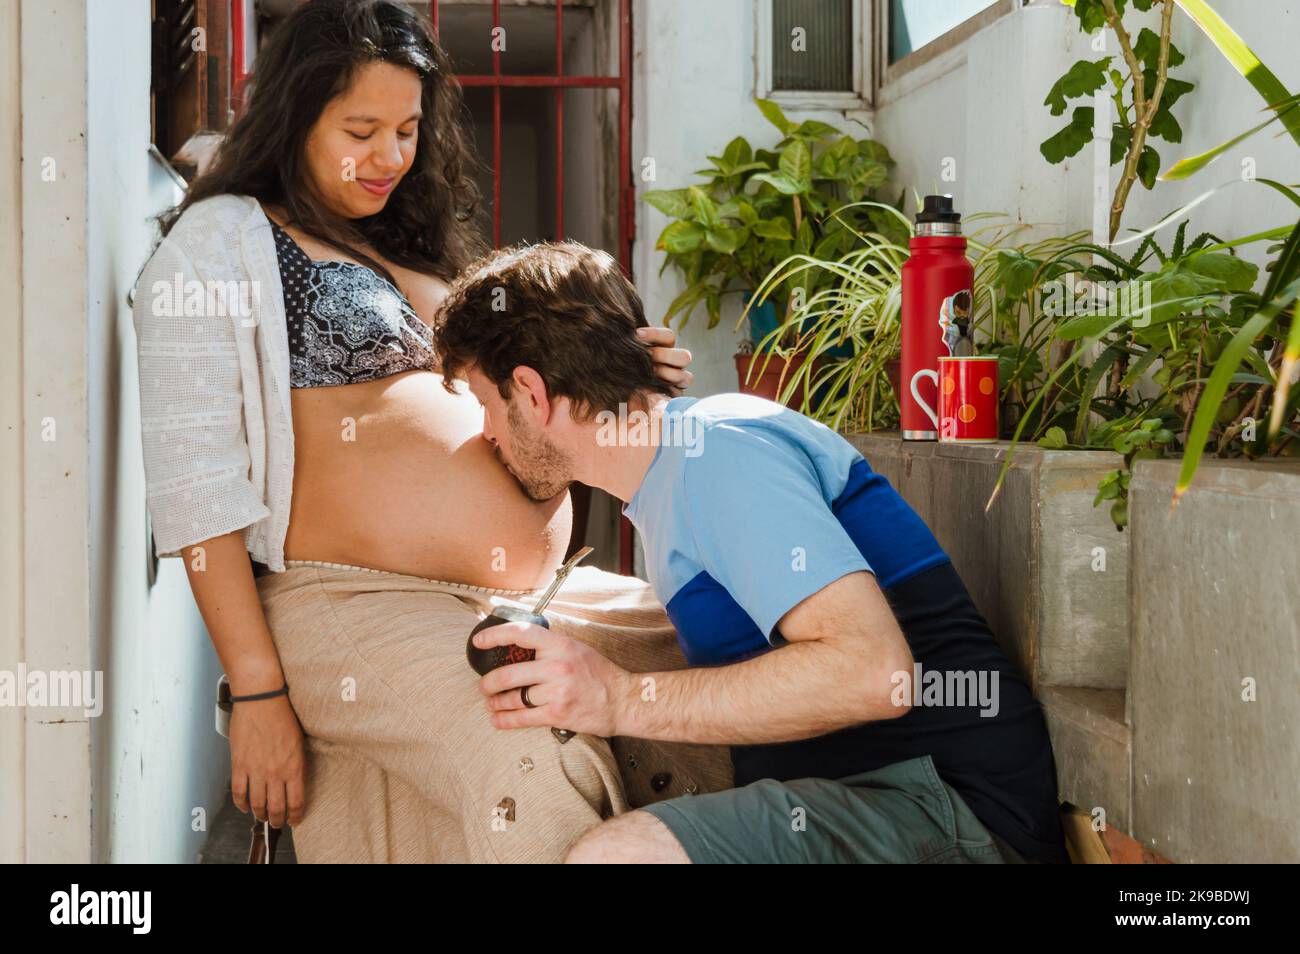 Der junge lateinische Kaukasusmann zu Hause küsst den Bauch seiner Frau, die schwanger ist, und sitzt glücklich und sieht zu, wie er seinem nächsten Baby Liebe schenkt. Stockfoto